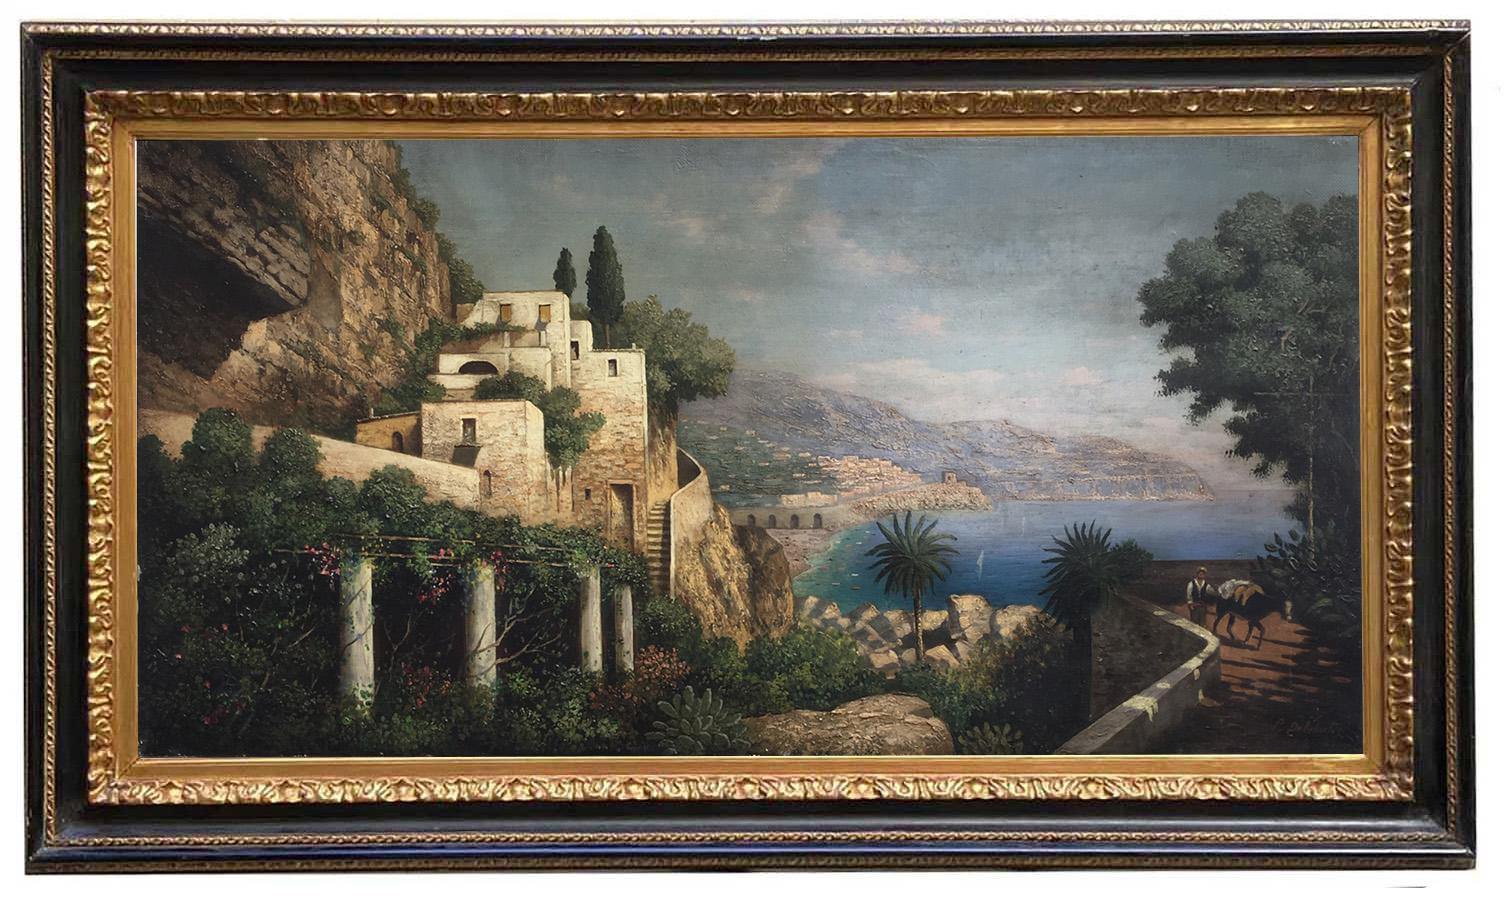 COAST- Posillipo School - Italian Landscape Oil on Canvas Painting